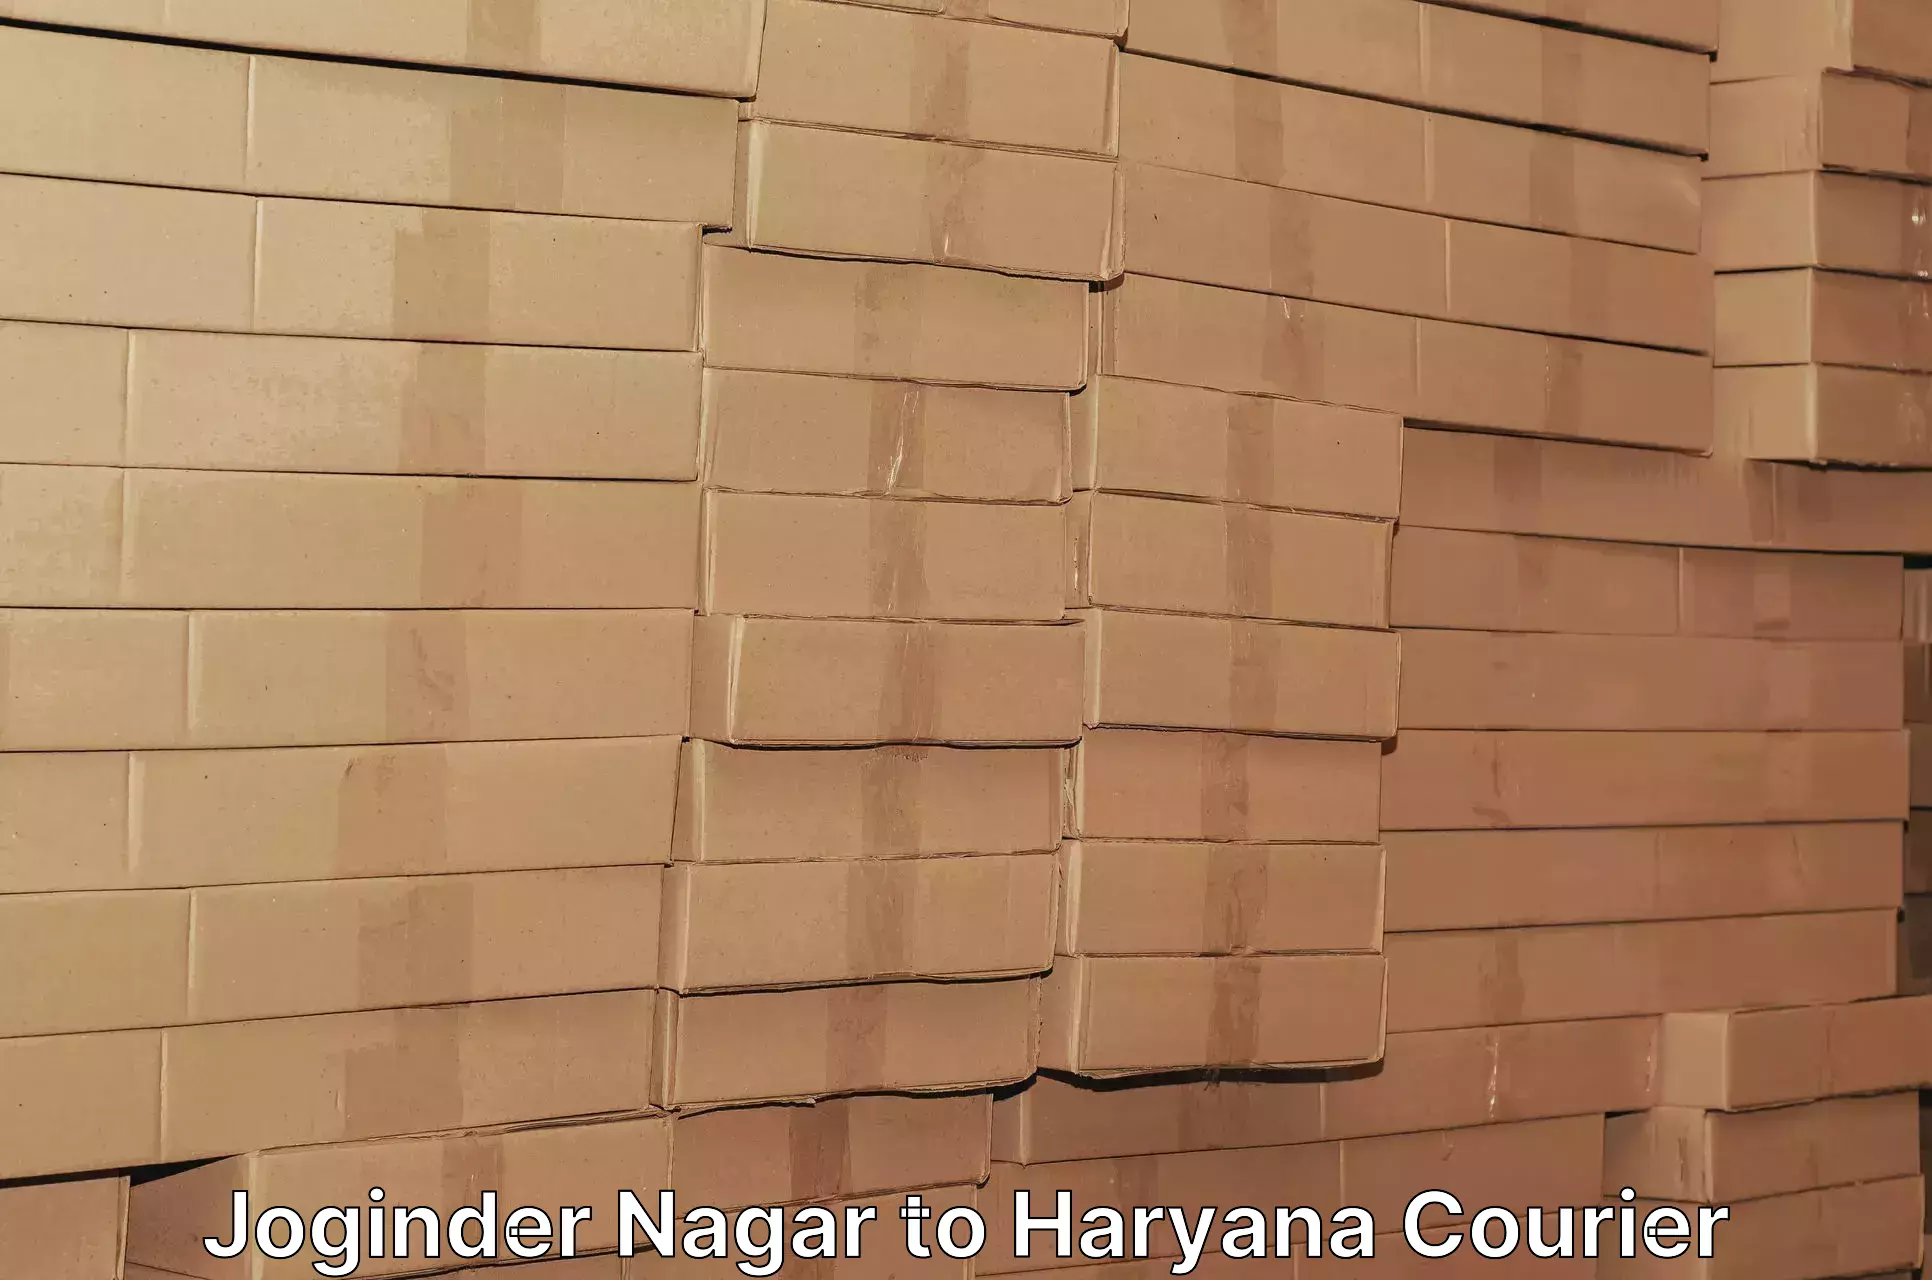 Efficient parcel service Joginder Nagar to Sonipat